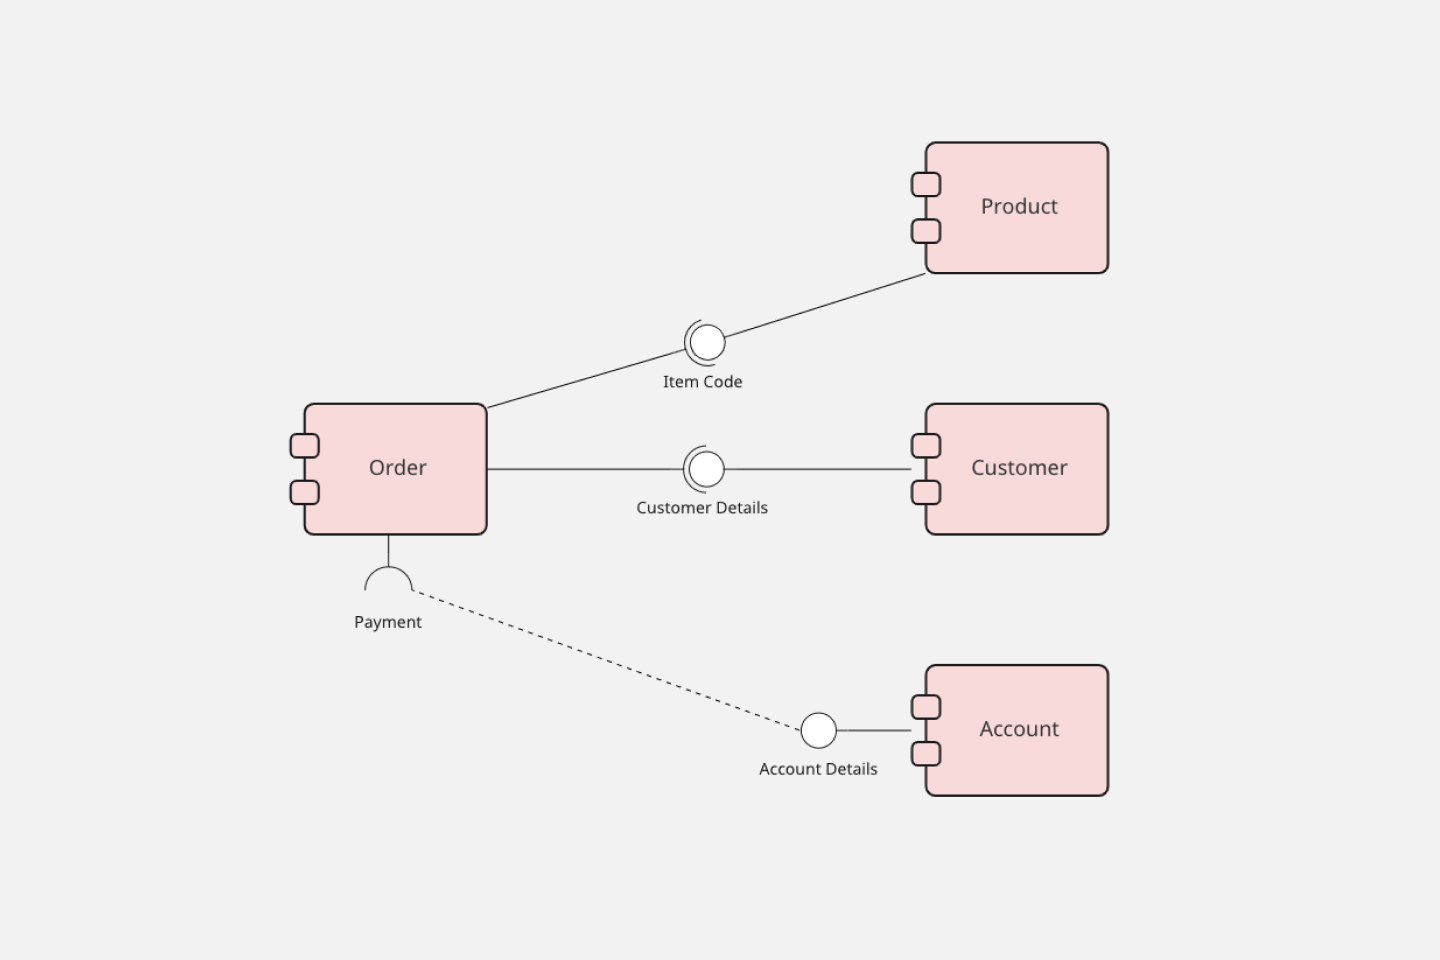 Mẫu biểu đồ truyền thông UML: Bạn muốn tạo ra những mẫu biểu đồ truyền thông UML chuyên nghiệp và hiệu quả? Hãy sử dụng Miro - công cụ tuyệt vời để tạo ra những biểu đồ UML hoàn hảo. Hãy xem hình ảnh liên quan để phát hiện thêm về những tính năng tuyệt vời của Miro!